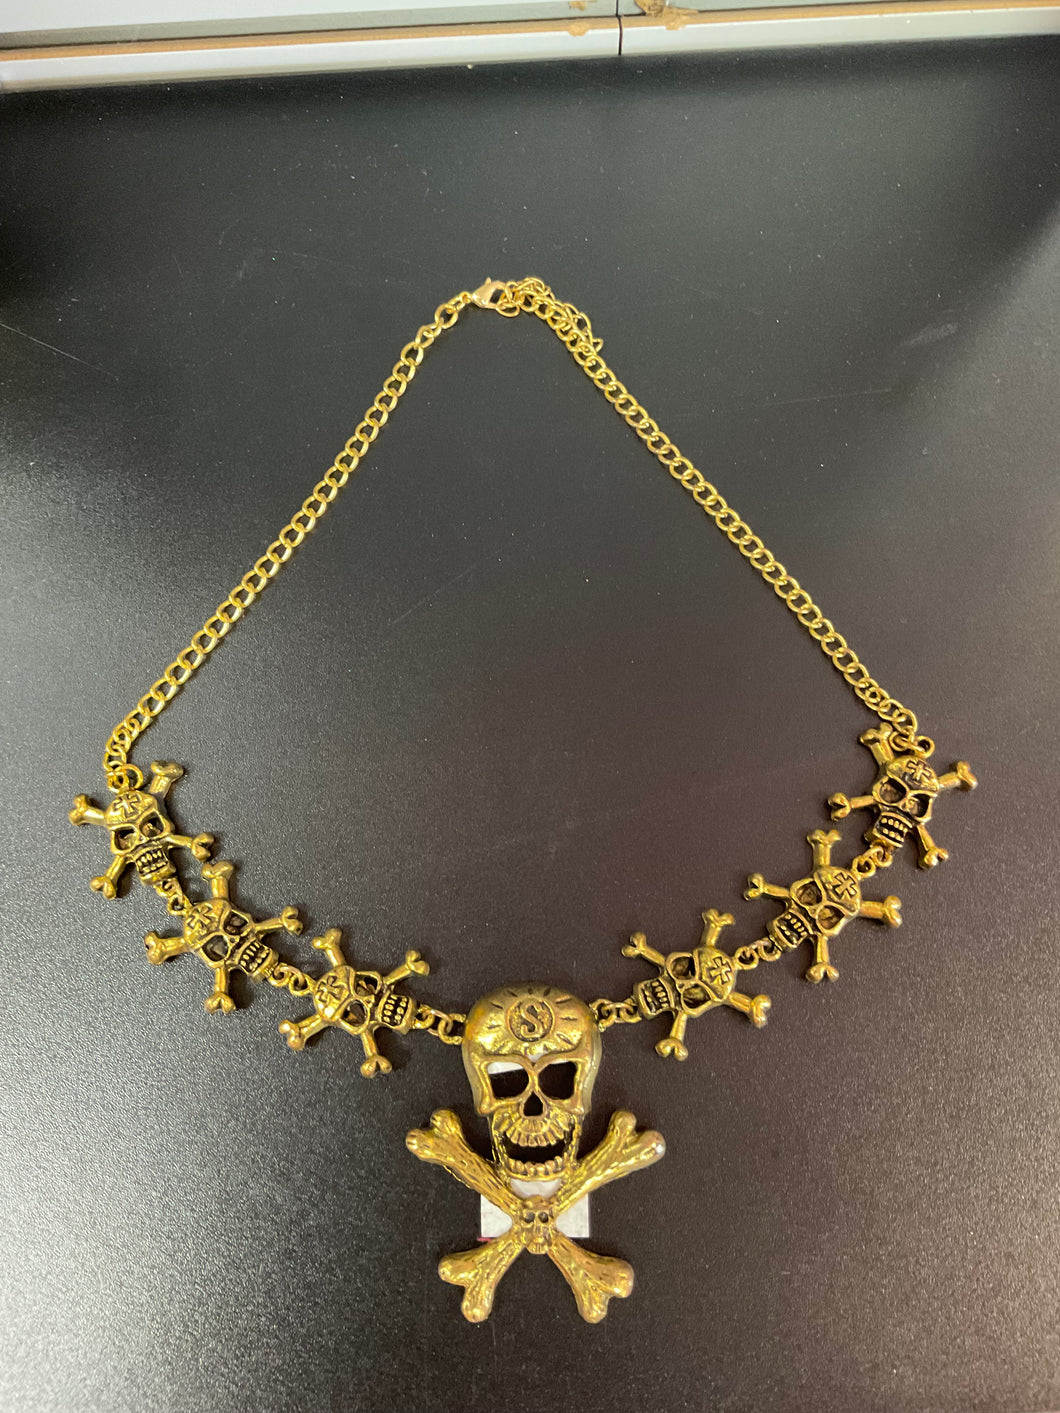 bronze skull necklace